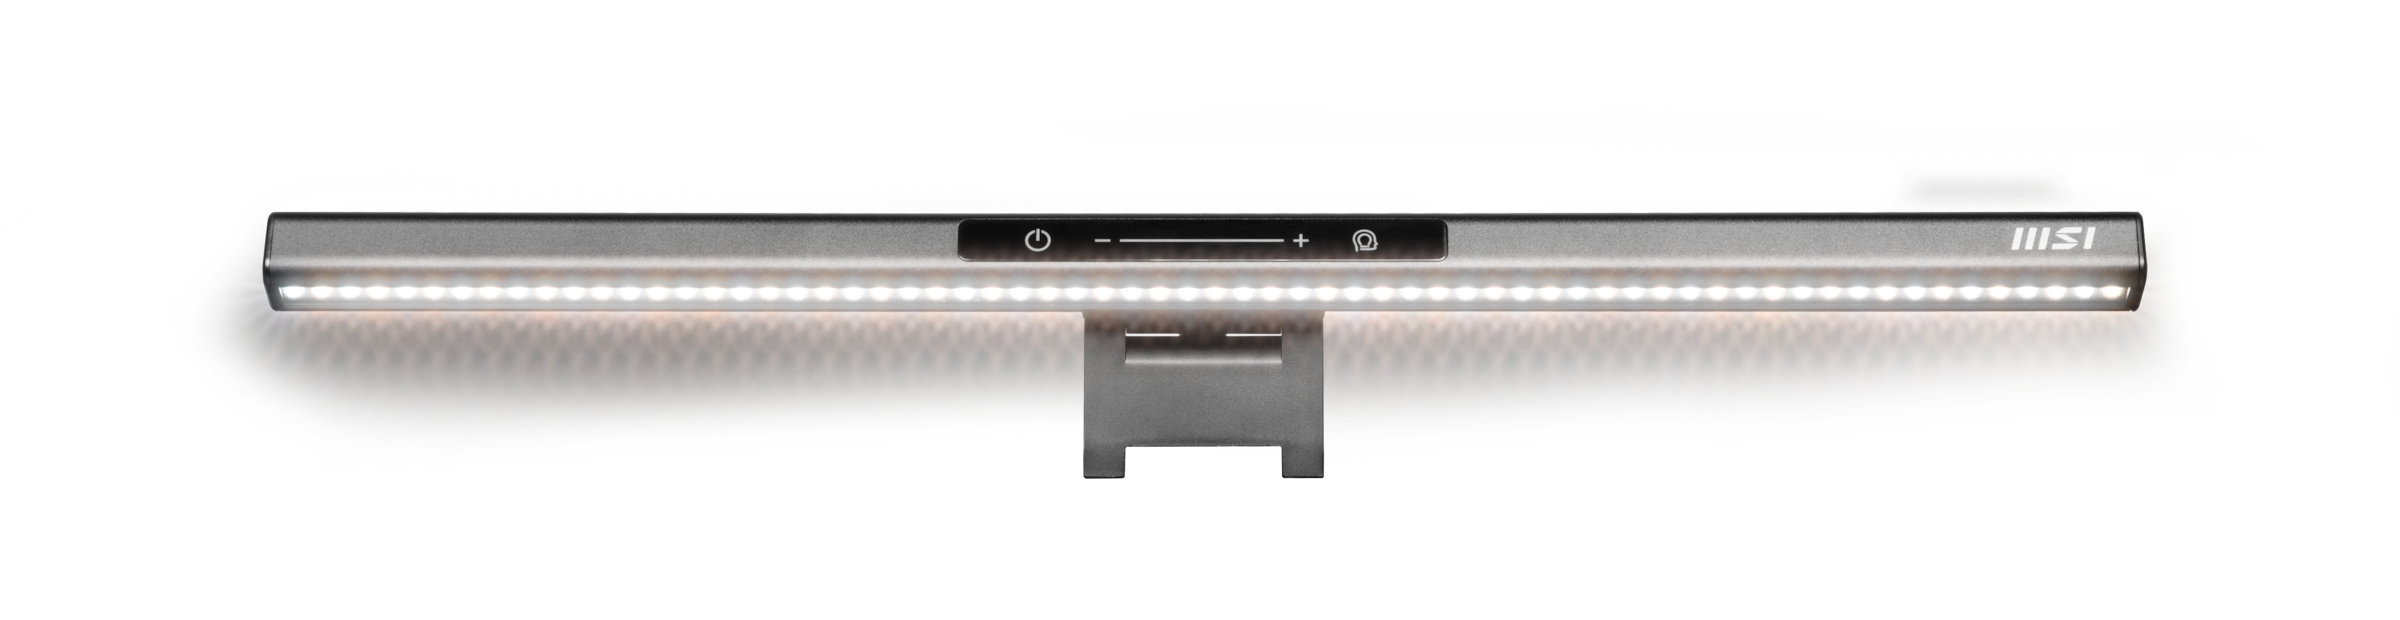 MSI LED-Monitor »Modern MD241PW«, 60 cm/24 Zoll, 1920 x 1080 px, Full HD, 5  ms Reaktionszeit, 75 Hz, 3 Jahre Herstellergarantie, höhenverstellbar,  USB-C online bestellen